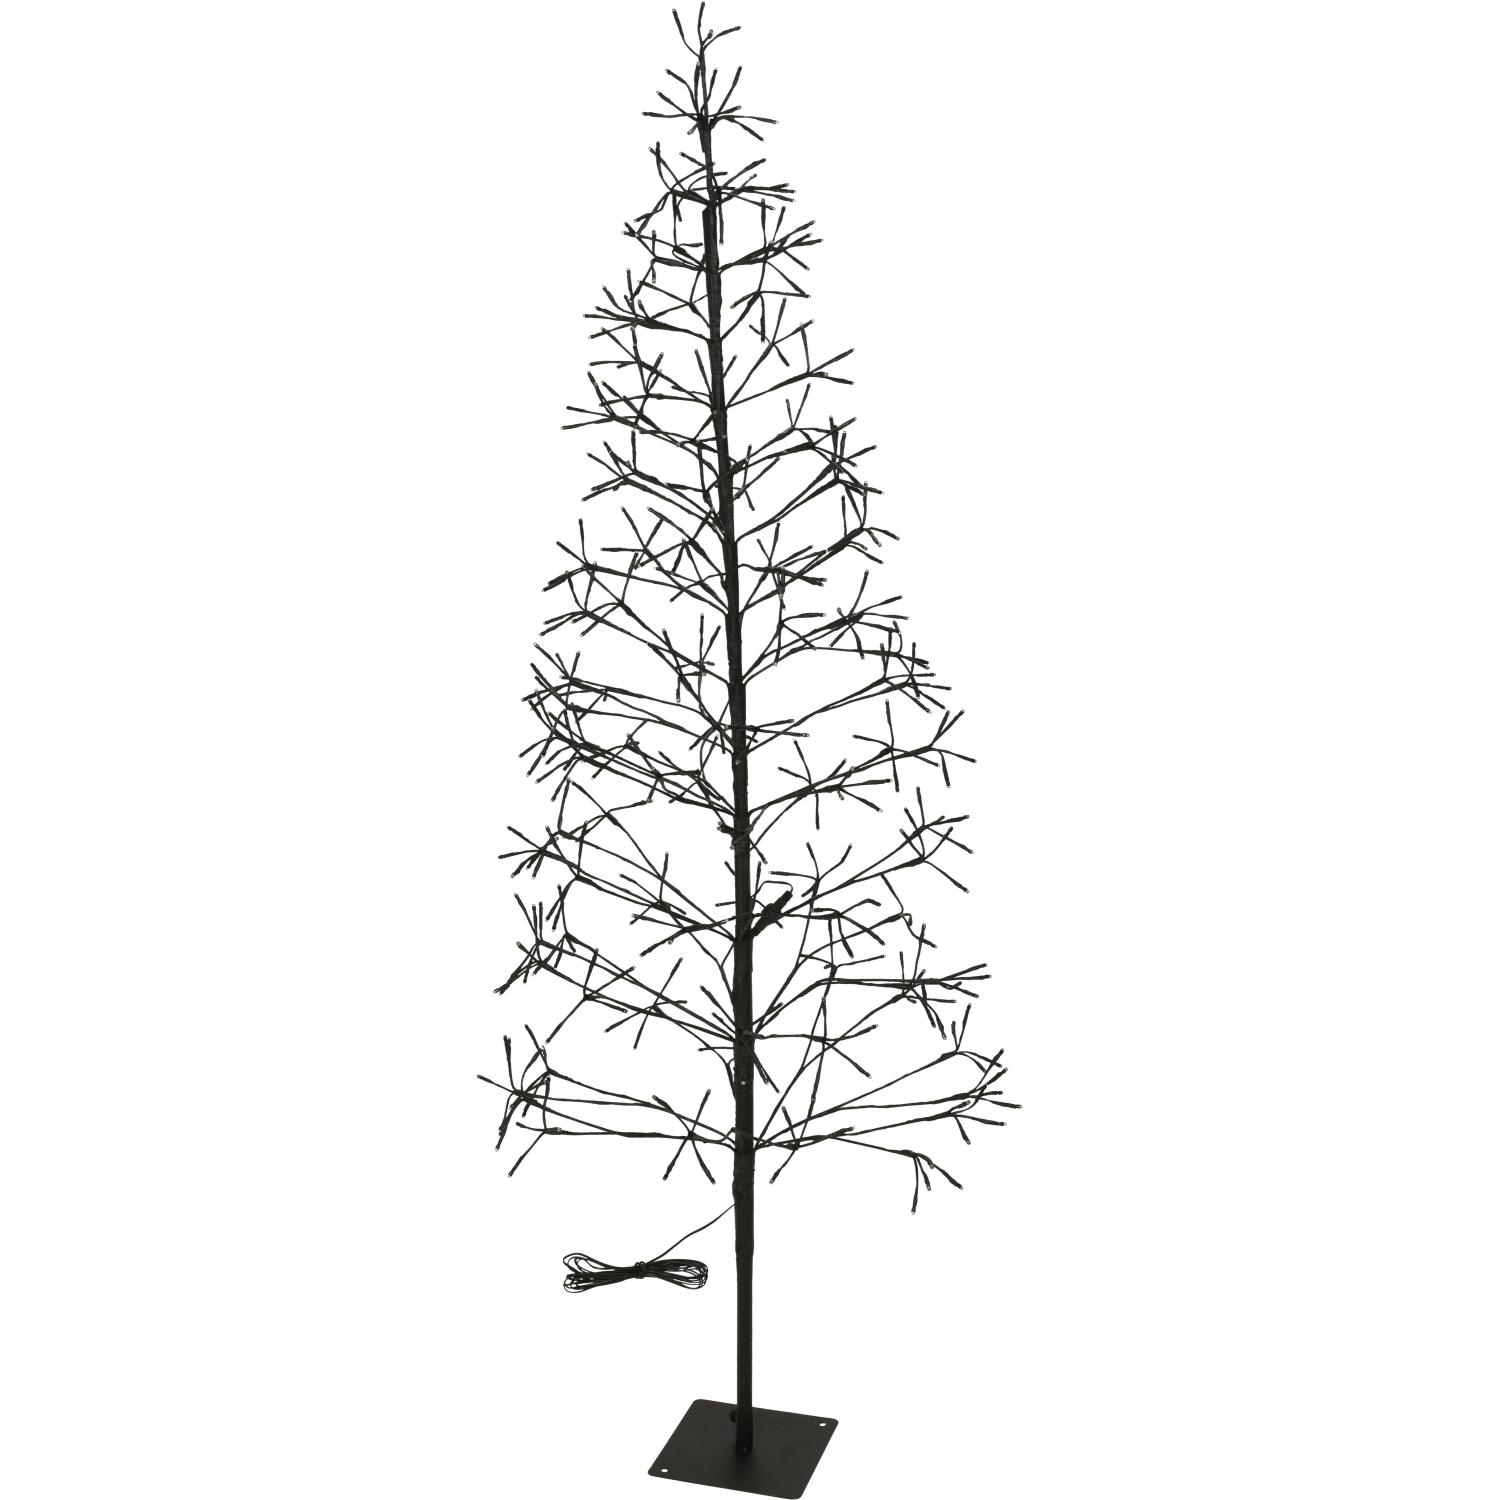 https://www.onshop24.eu/media/image/product/6771/lg/lichterbaum-400-led-warmweiss-180-cm-silhouette-beleuchteter-baum-weihnachtsbeleuchtung-innen-aussen.jpg